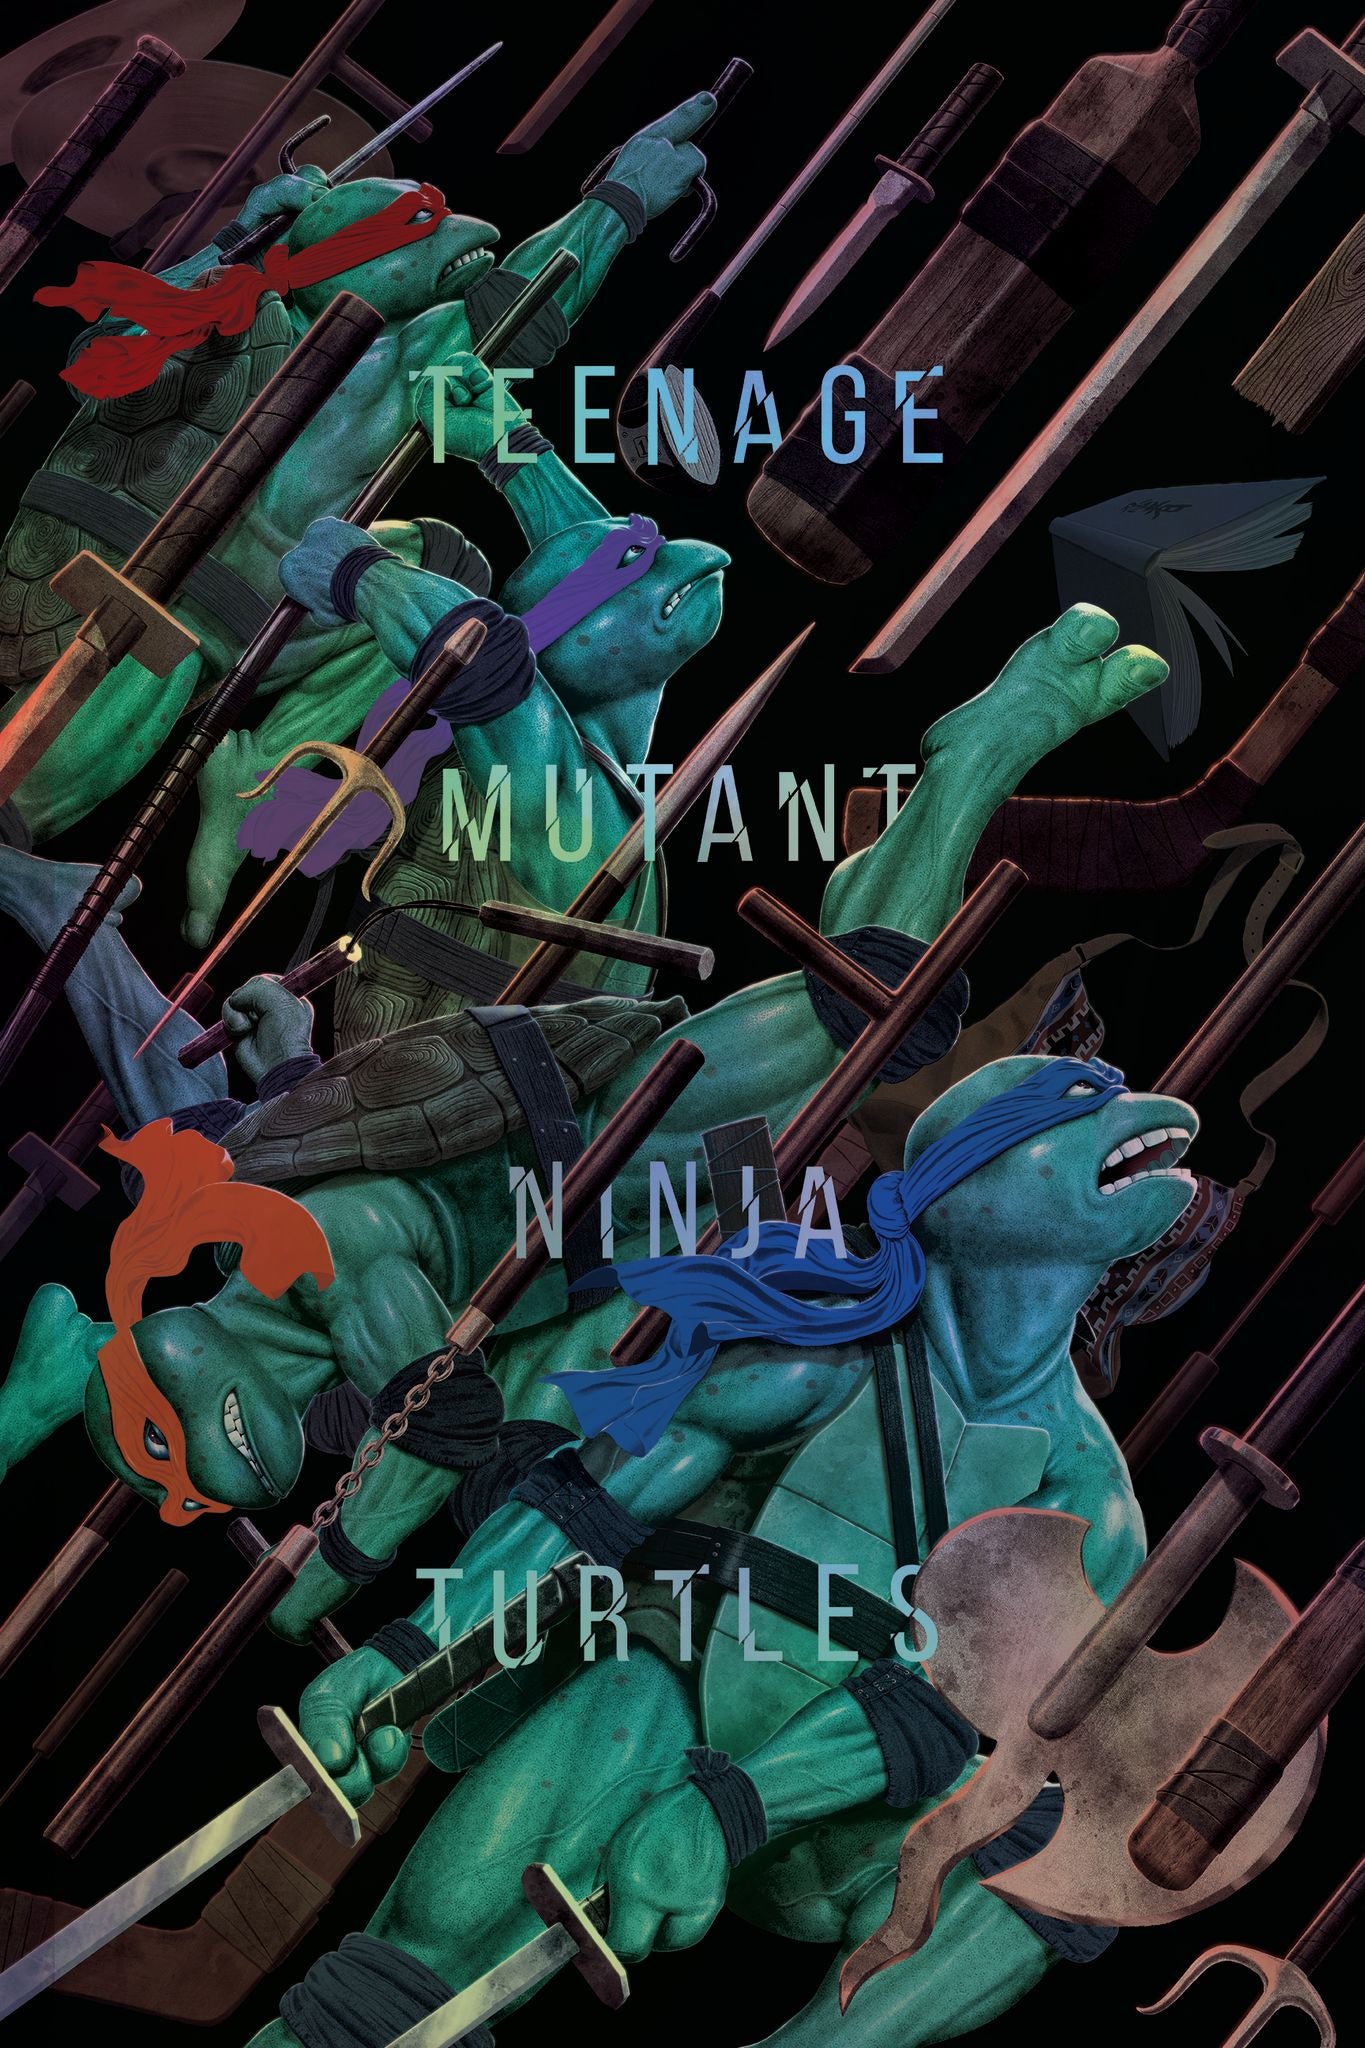 Jason Raish "Teenage Mutant Ninja Turtles" Foil Variant